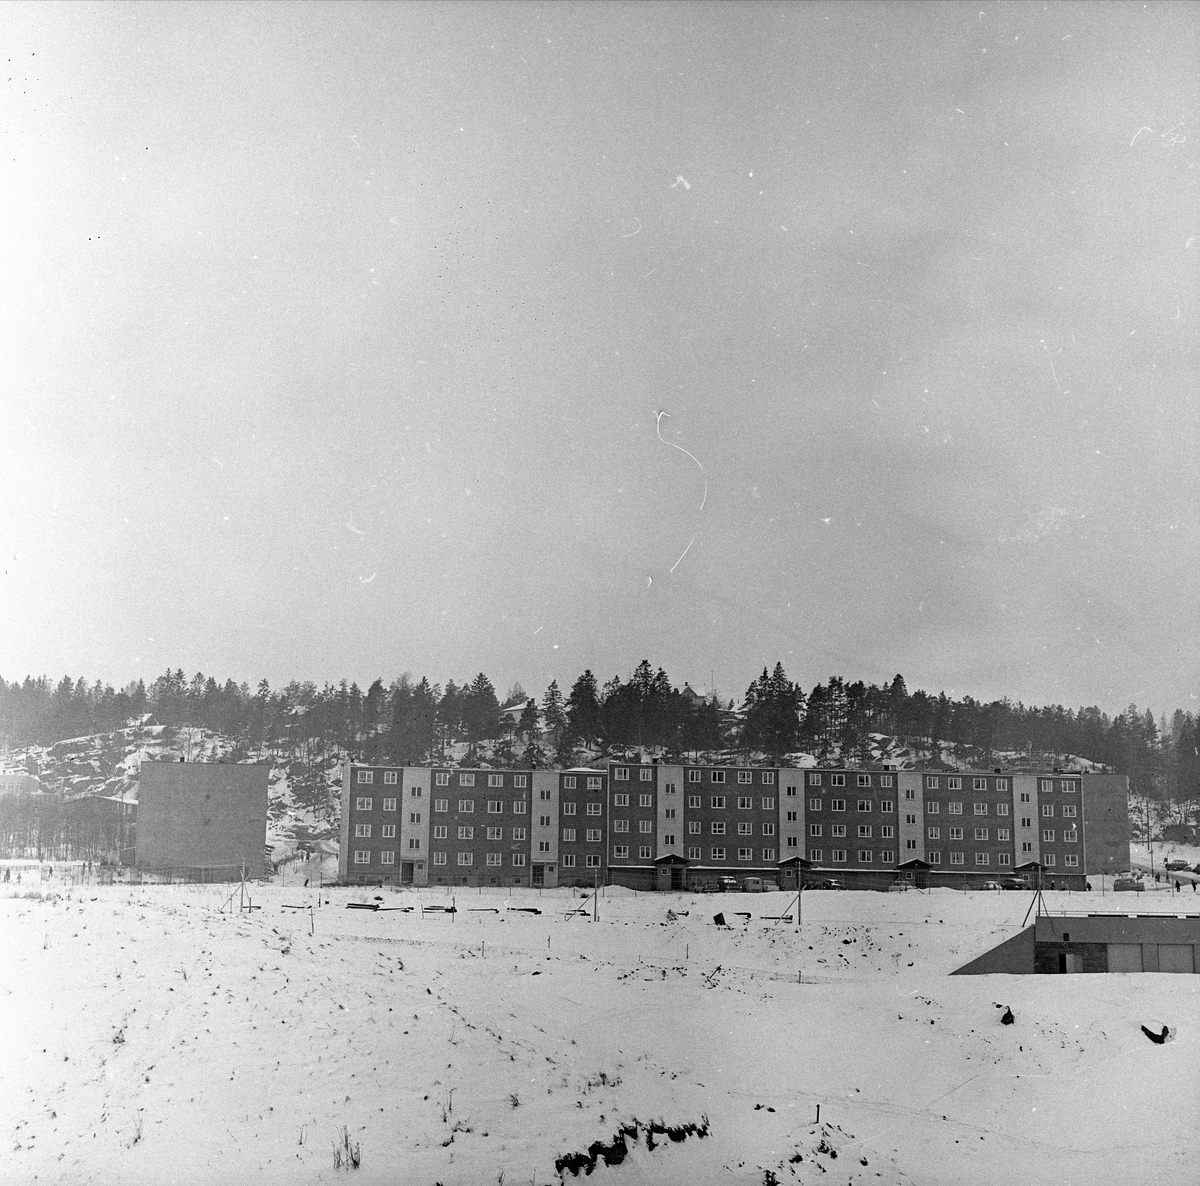 Oslo, 01.03.1965. Landskap med boligerblokker.